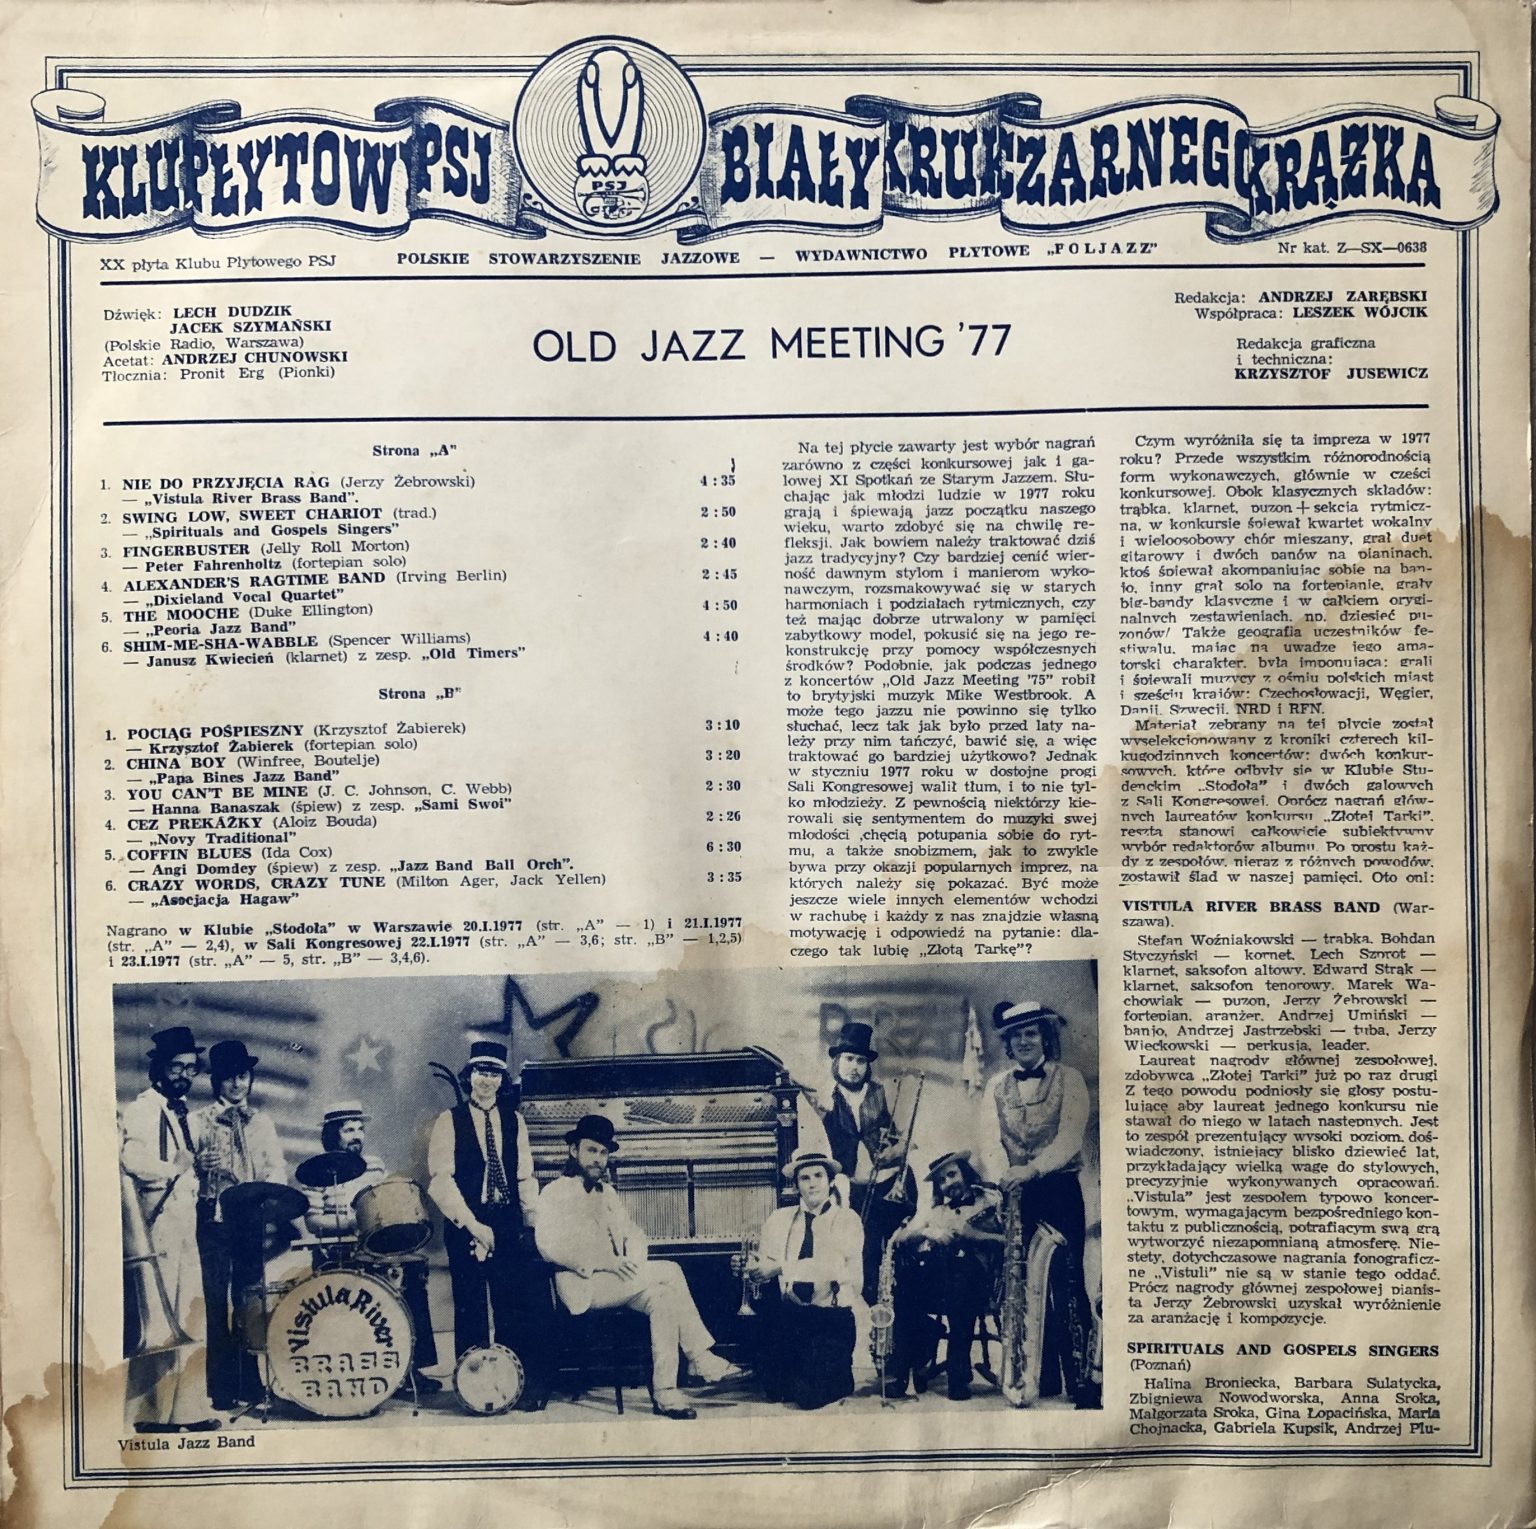 Old Jazz Meeting ’77 – Klub Płytowy PSJ – Biały Kruk Czarnego Krążka XX LP